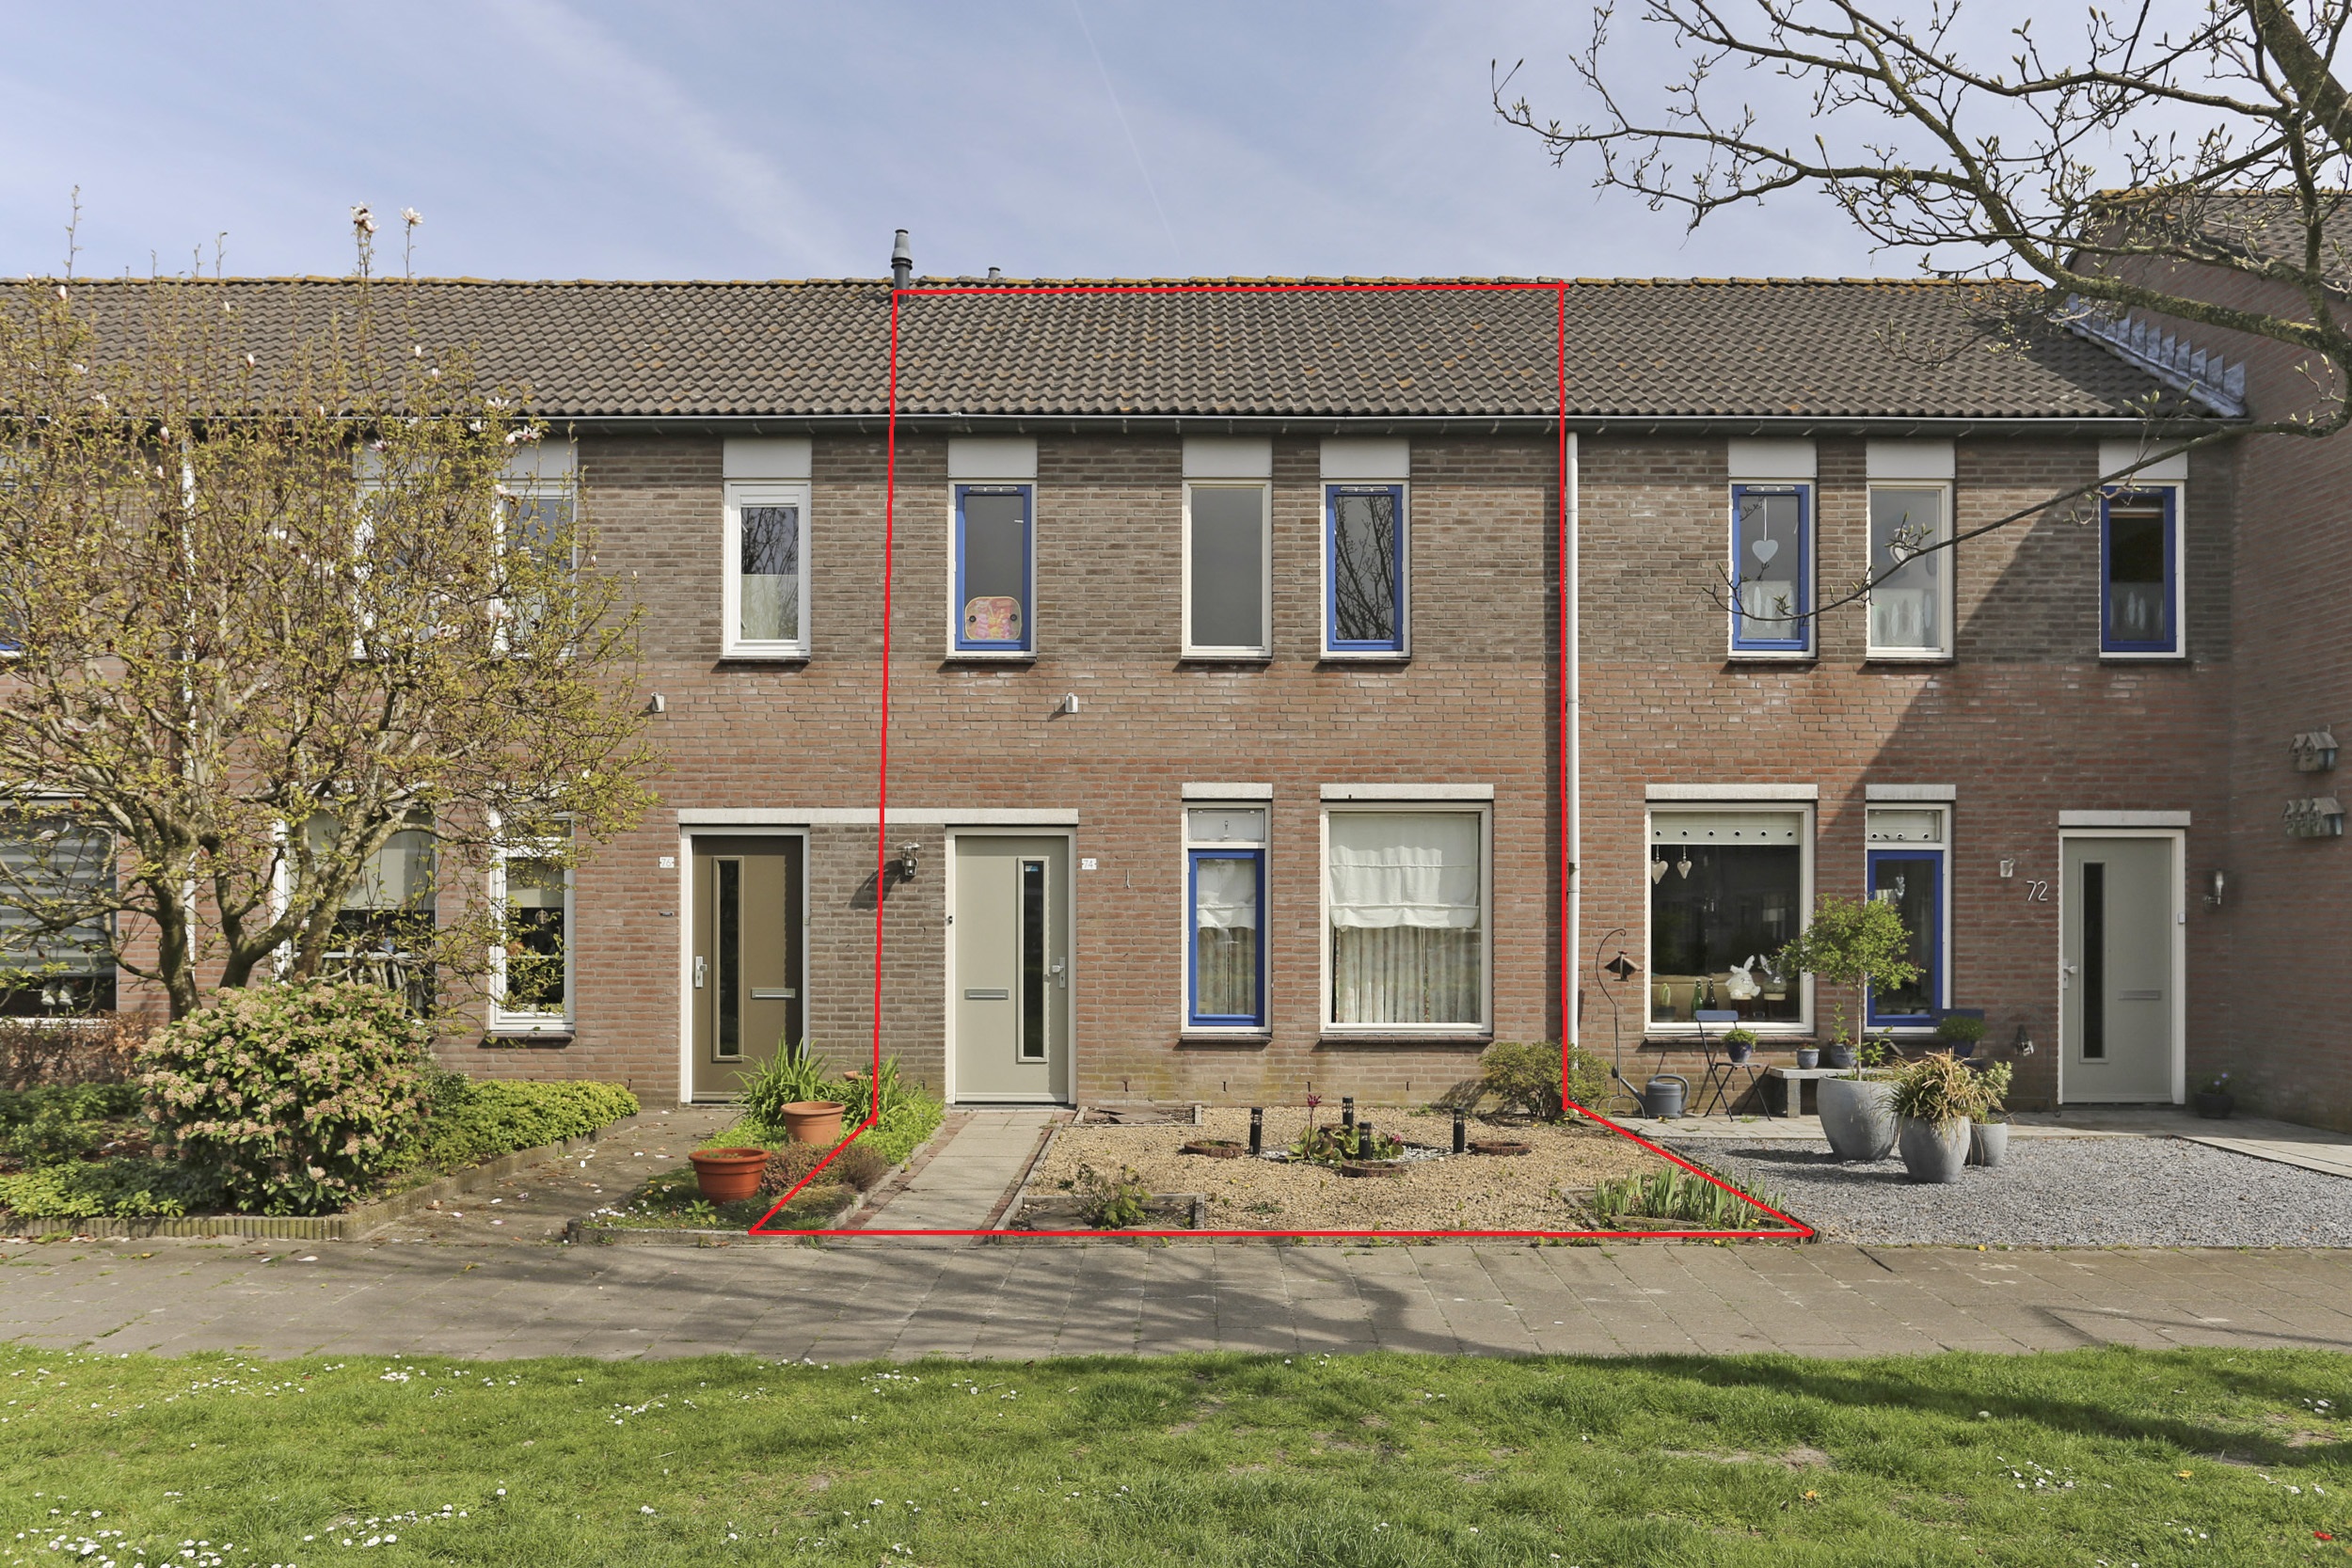 Van Heinsbergstraat 74, 5126 HN Gilze, Nederland